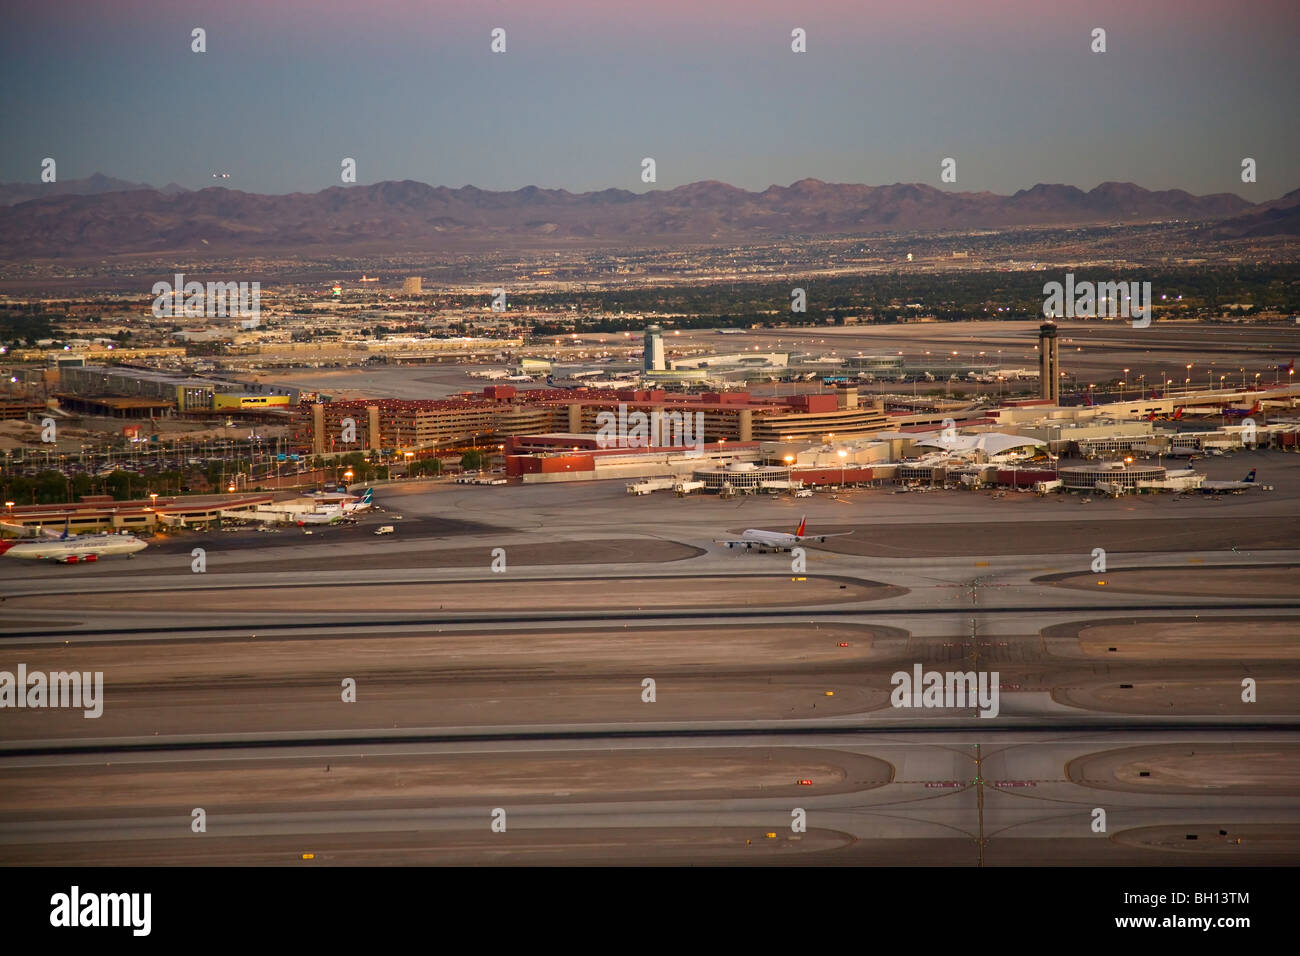 Vue aérienne de l'aéroport international McCarran, Las Vegas, Nevada. Banque D'Images